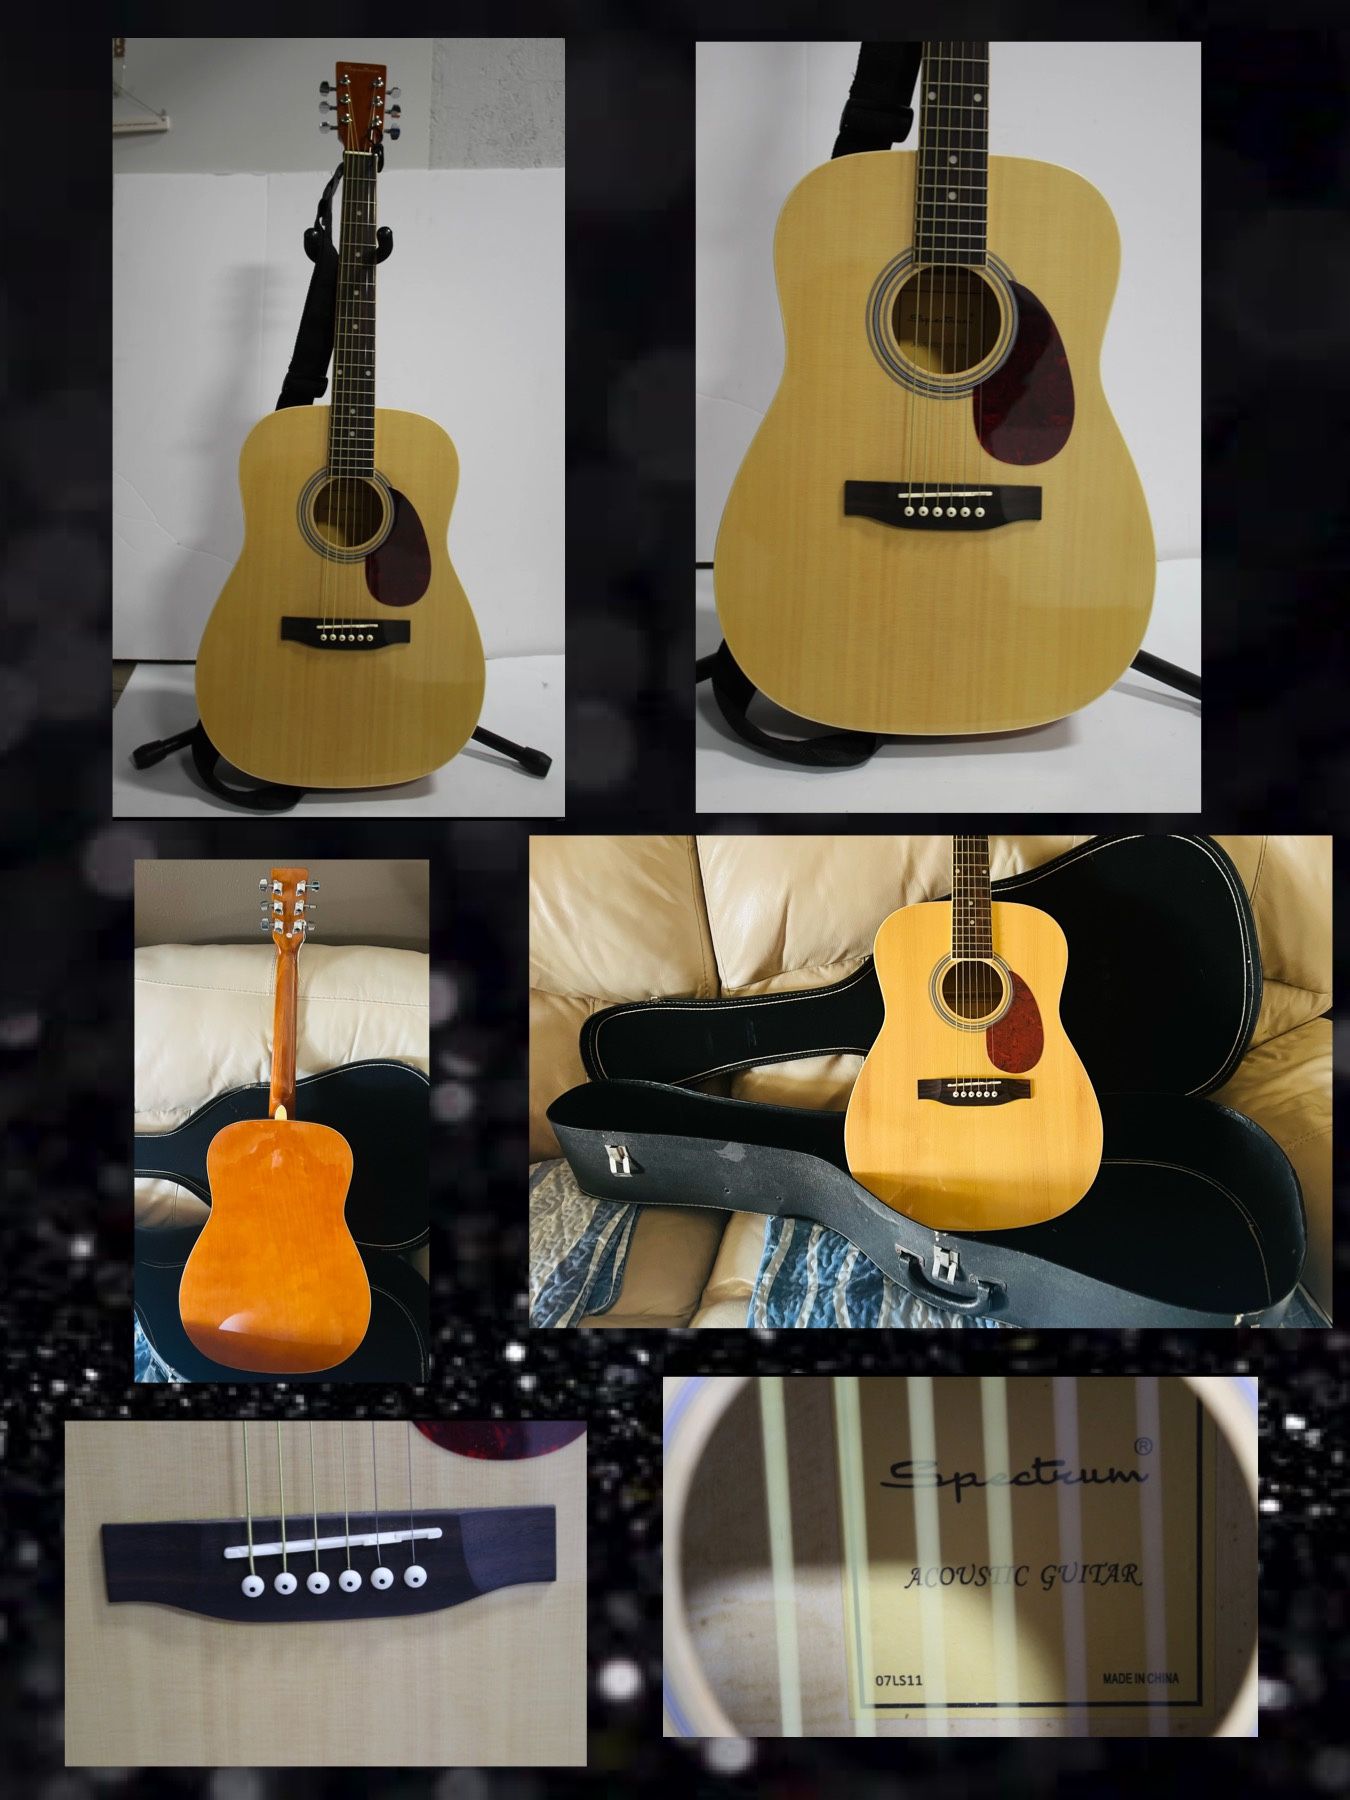 Spectrum 38” Concert Acoustic Guitar